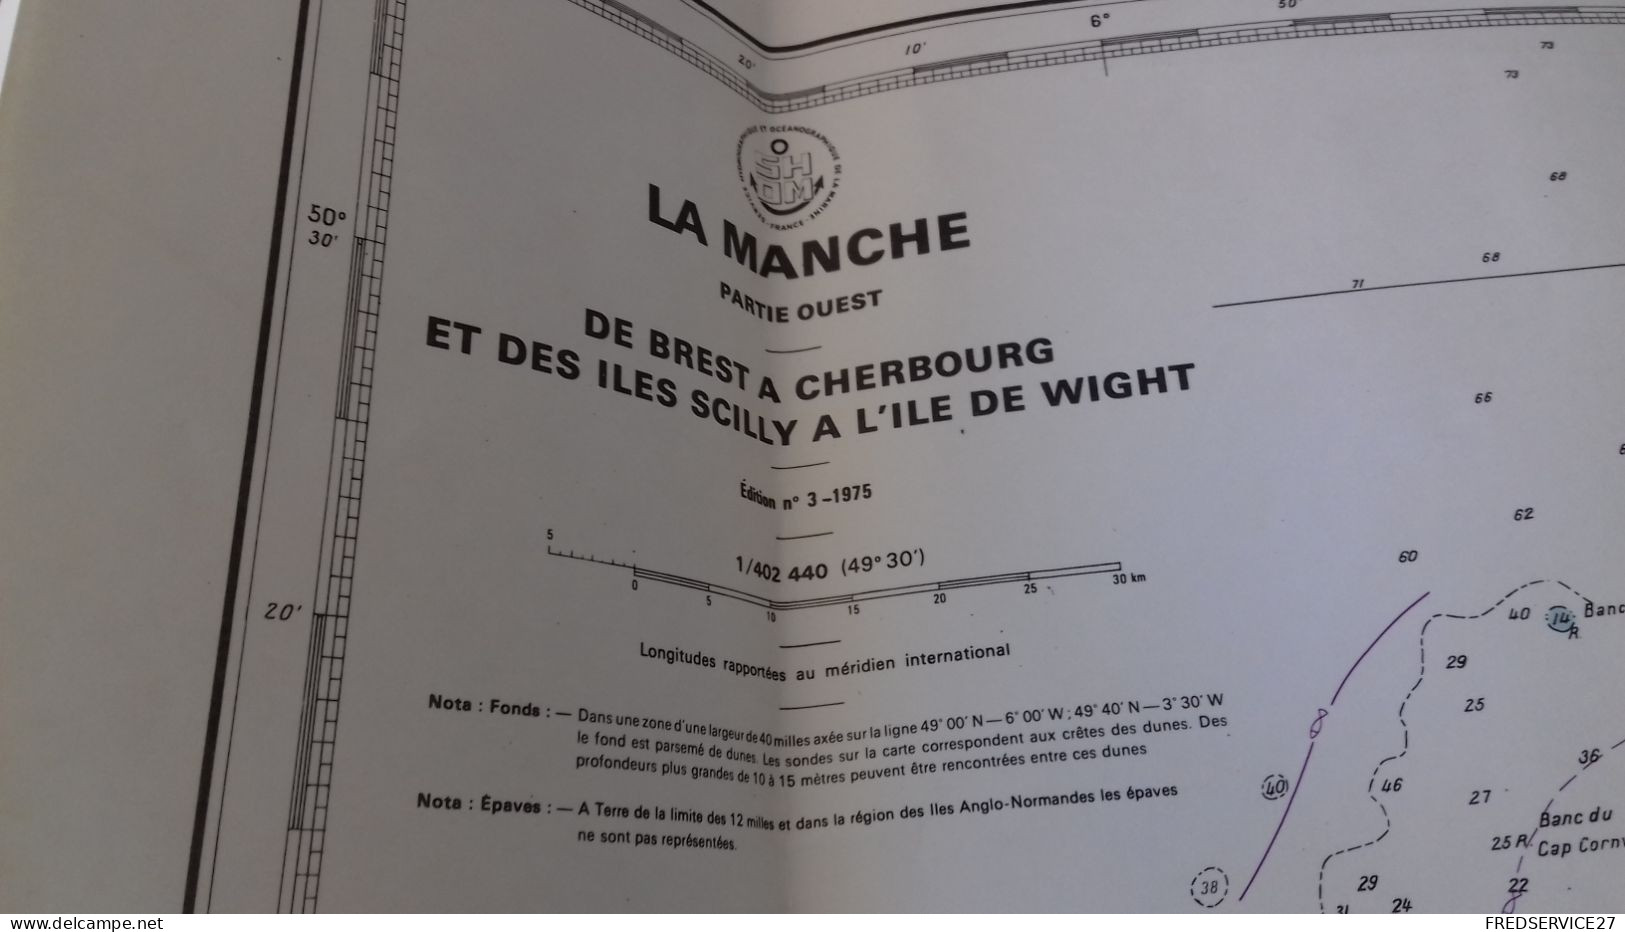 124/ LA MANCHE PARTIE OUEST DE BREST A CHERBOURG ET DES ILES SCILLY A L ILE DE WIGHT 1975 - Nautical Charts